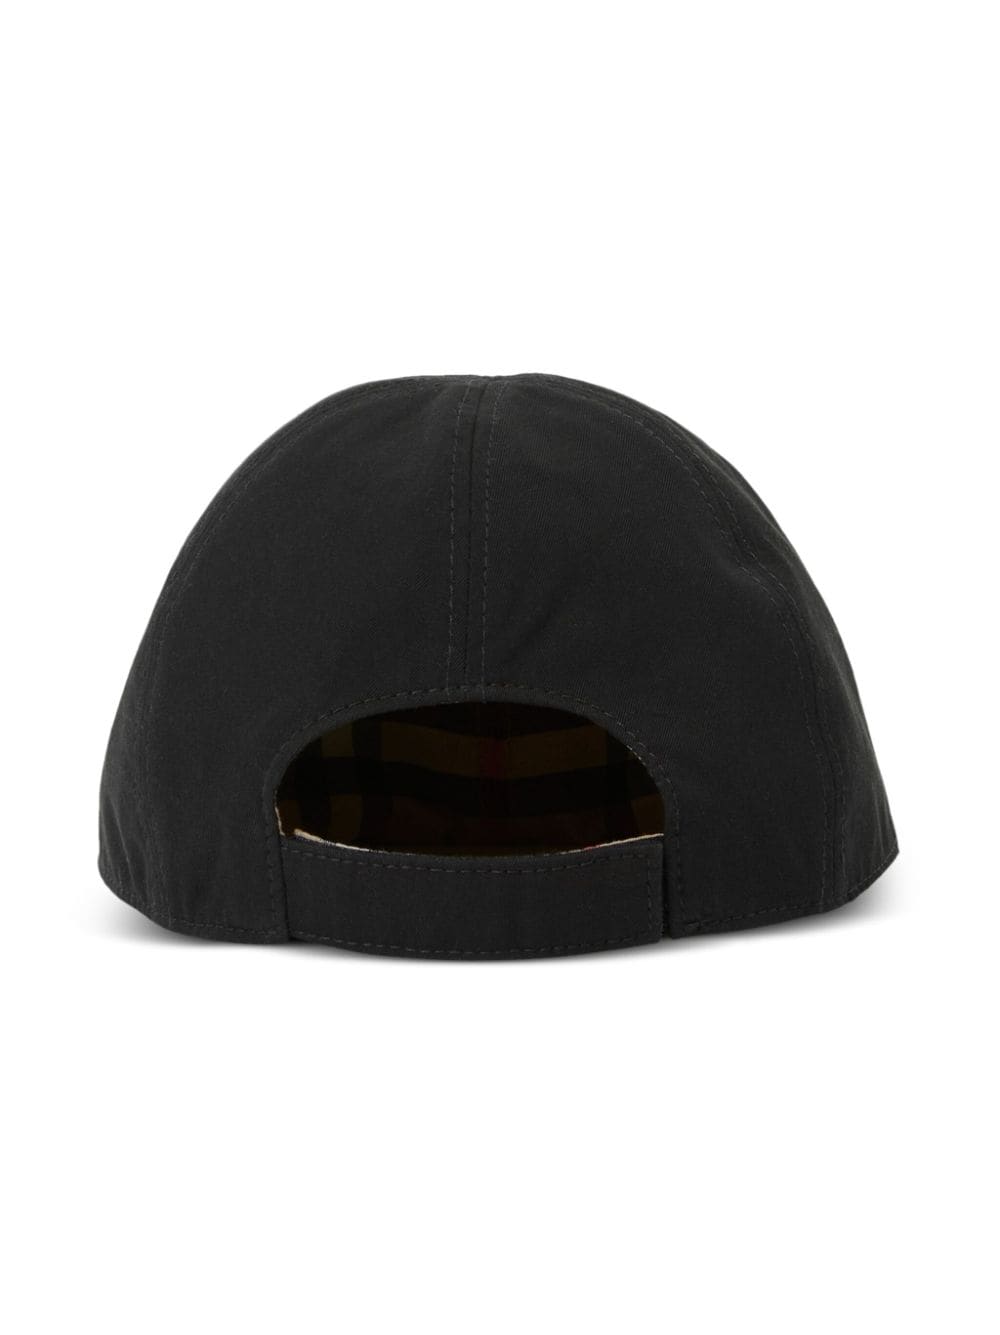 Cappello nero/beige unisex